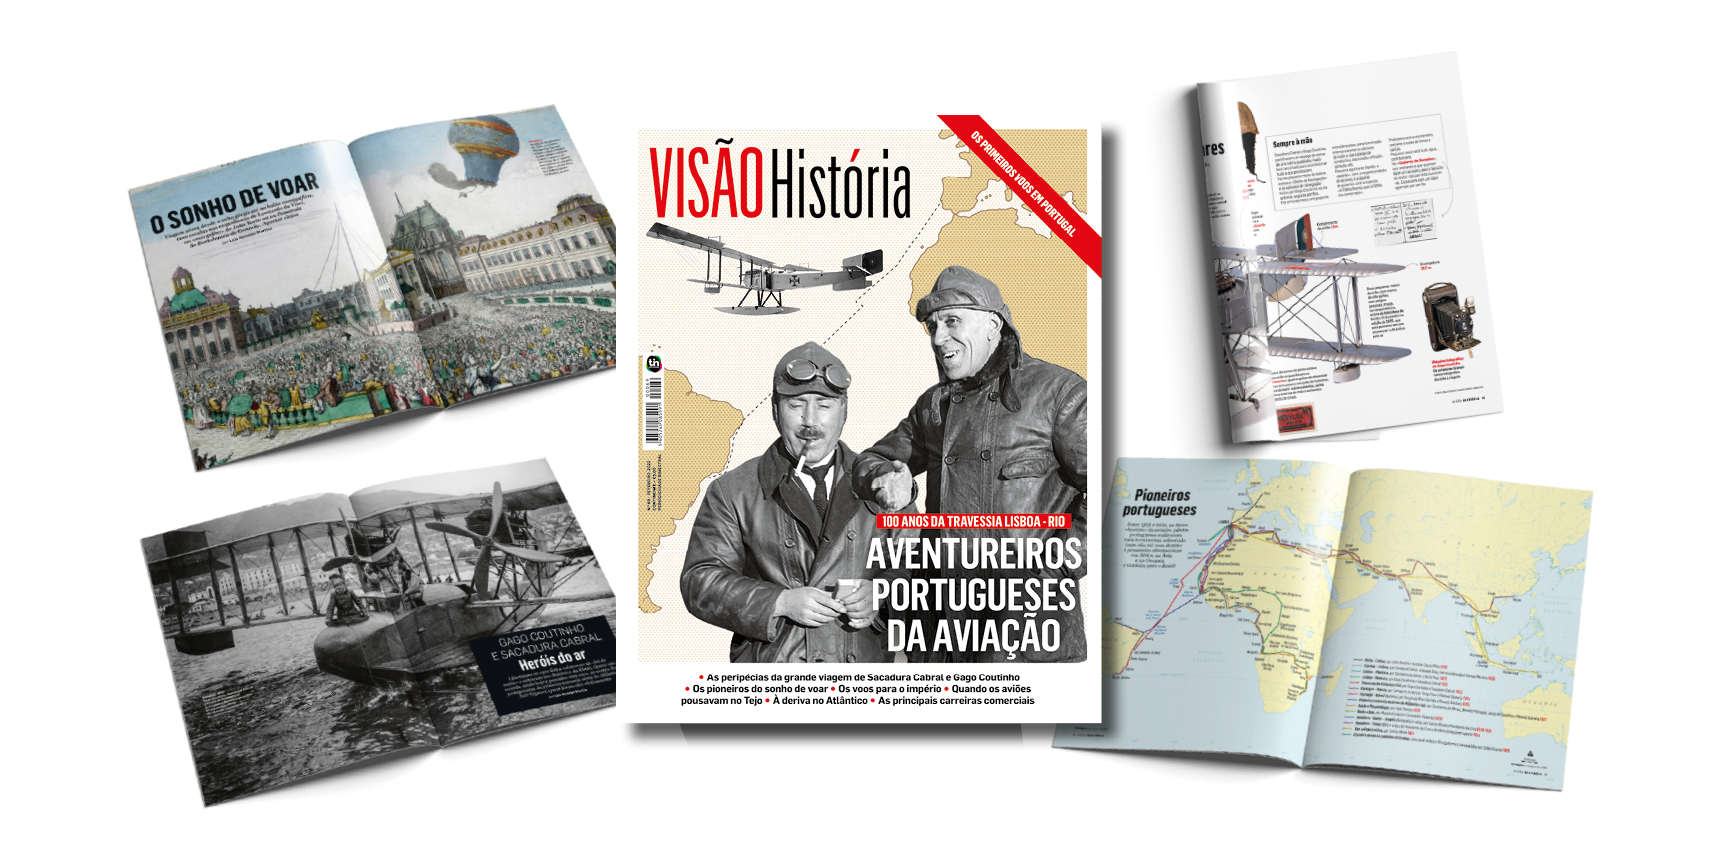 Os aventureiros portugueses da aviação na VISÃO História